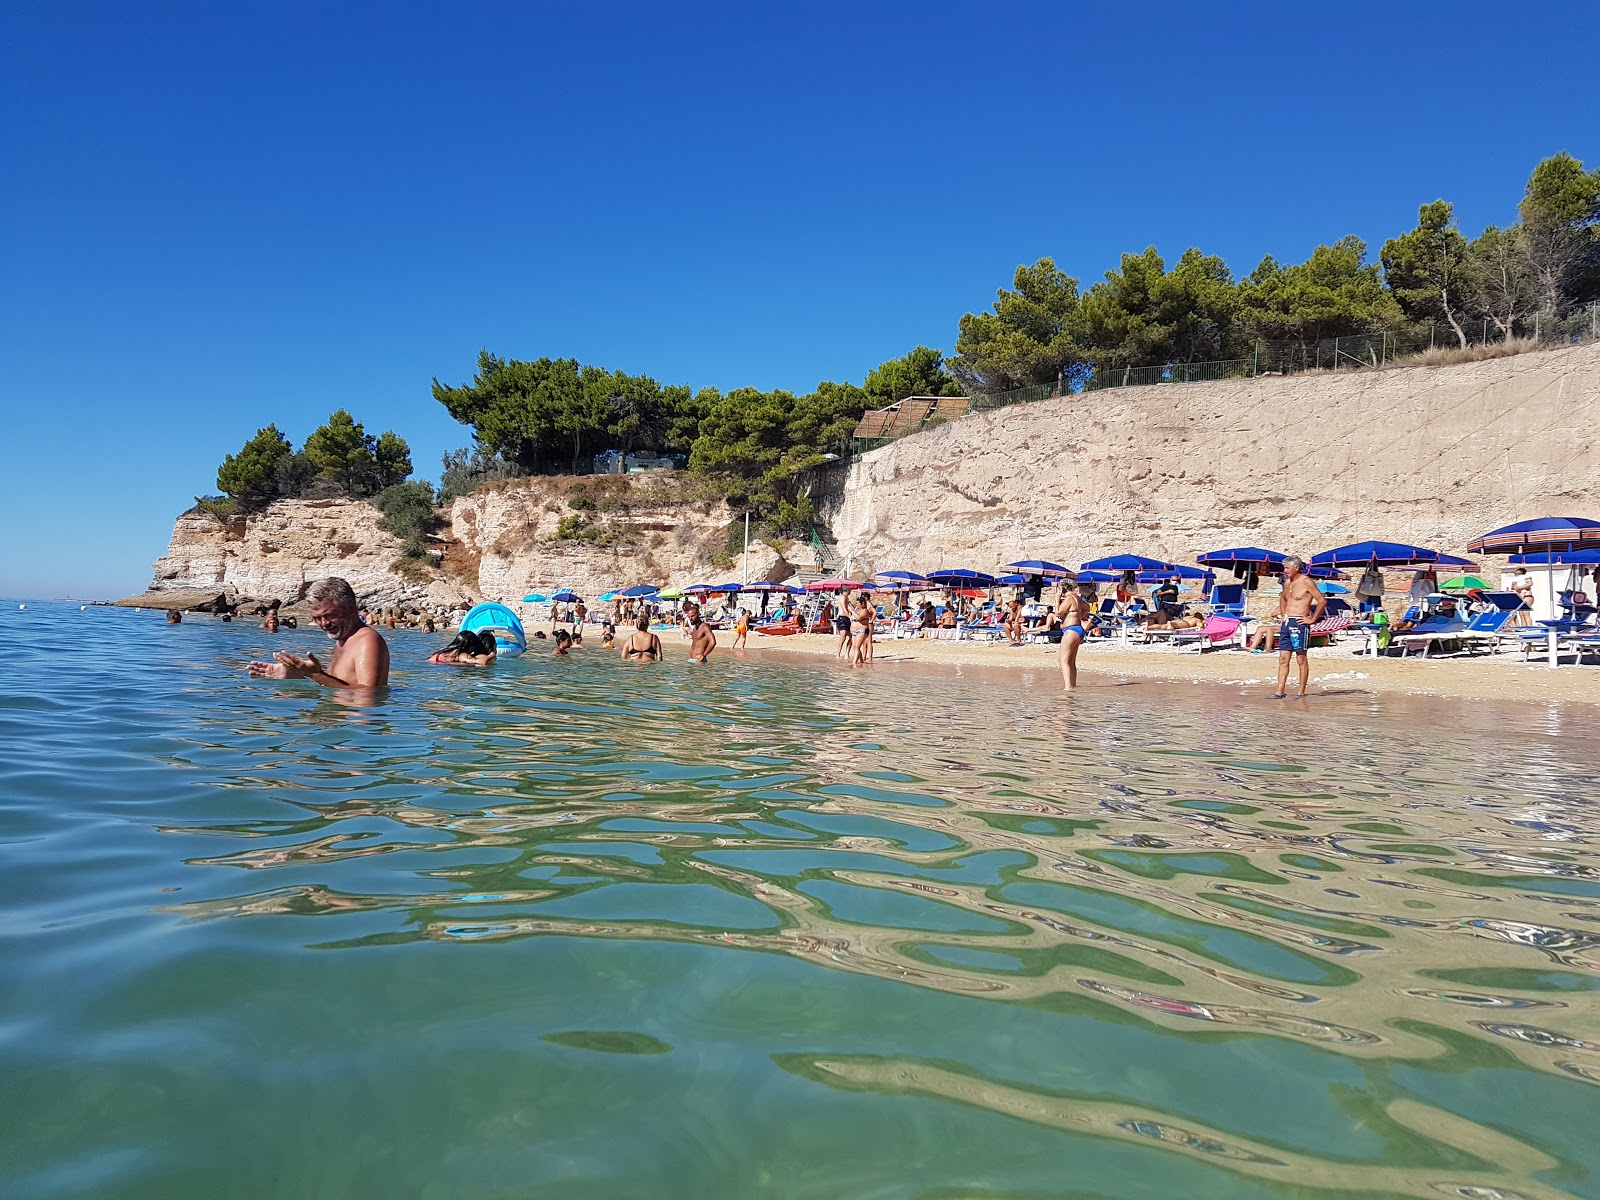 Foto de Spiaggia di Varcaro ubicado en área natural